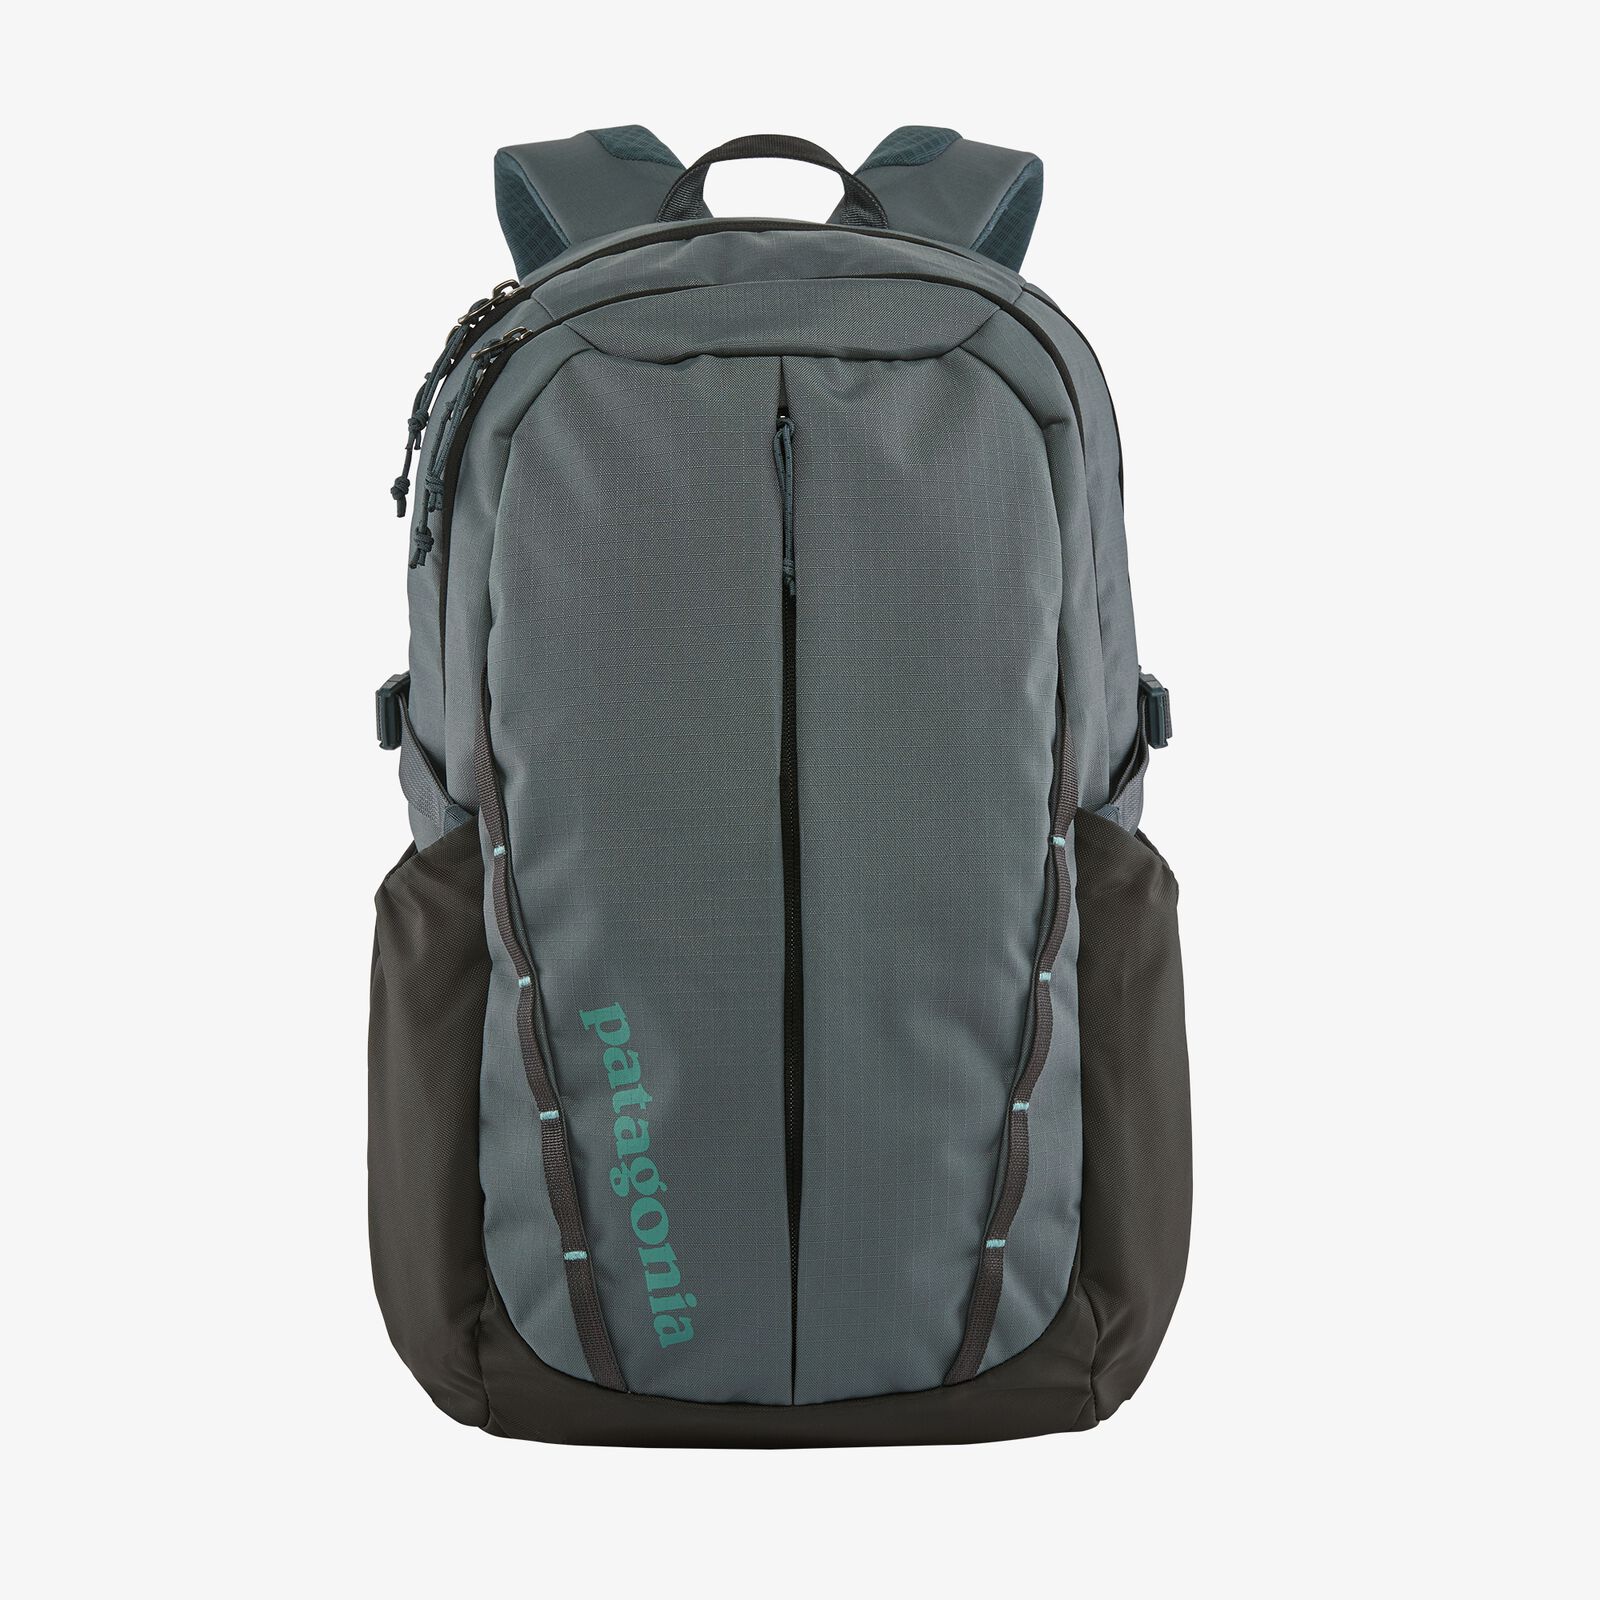 8 Best Patagonia School Backpack In 2021 - Backpack Trend